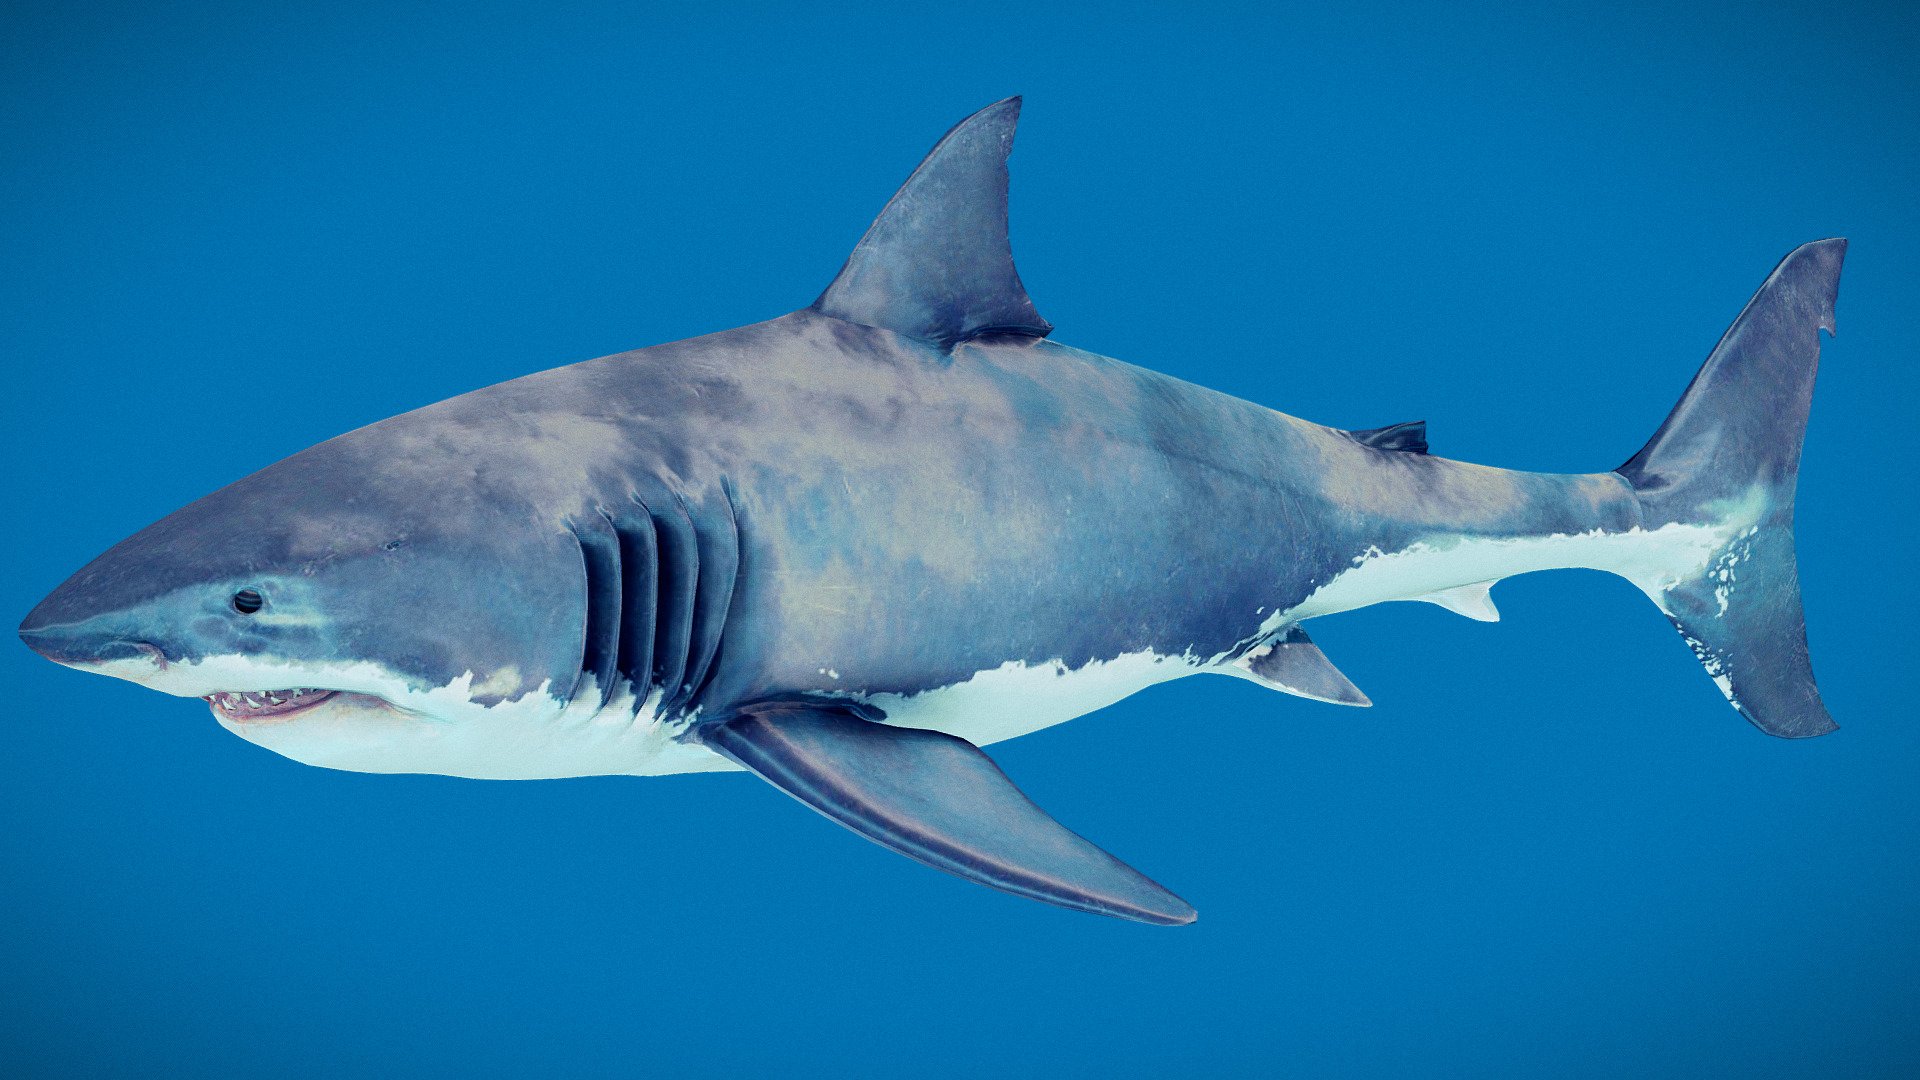 Swiming Great White Shark Animated
fbx file format - Great White Shark Animated - 3D model by monstermod 3d model